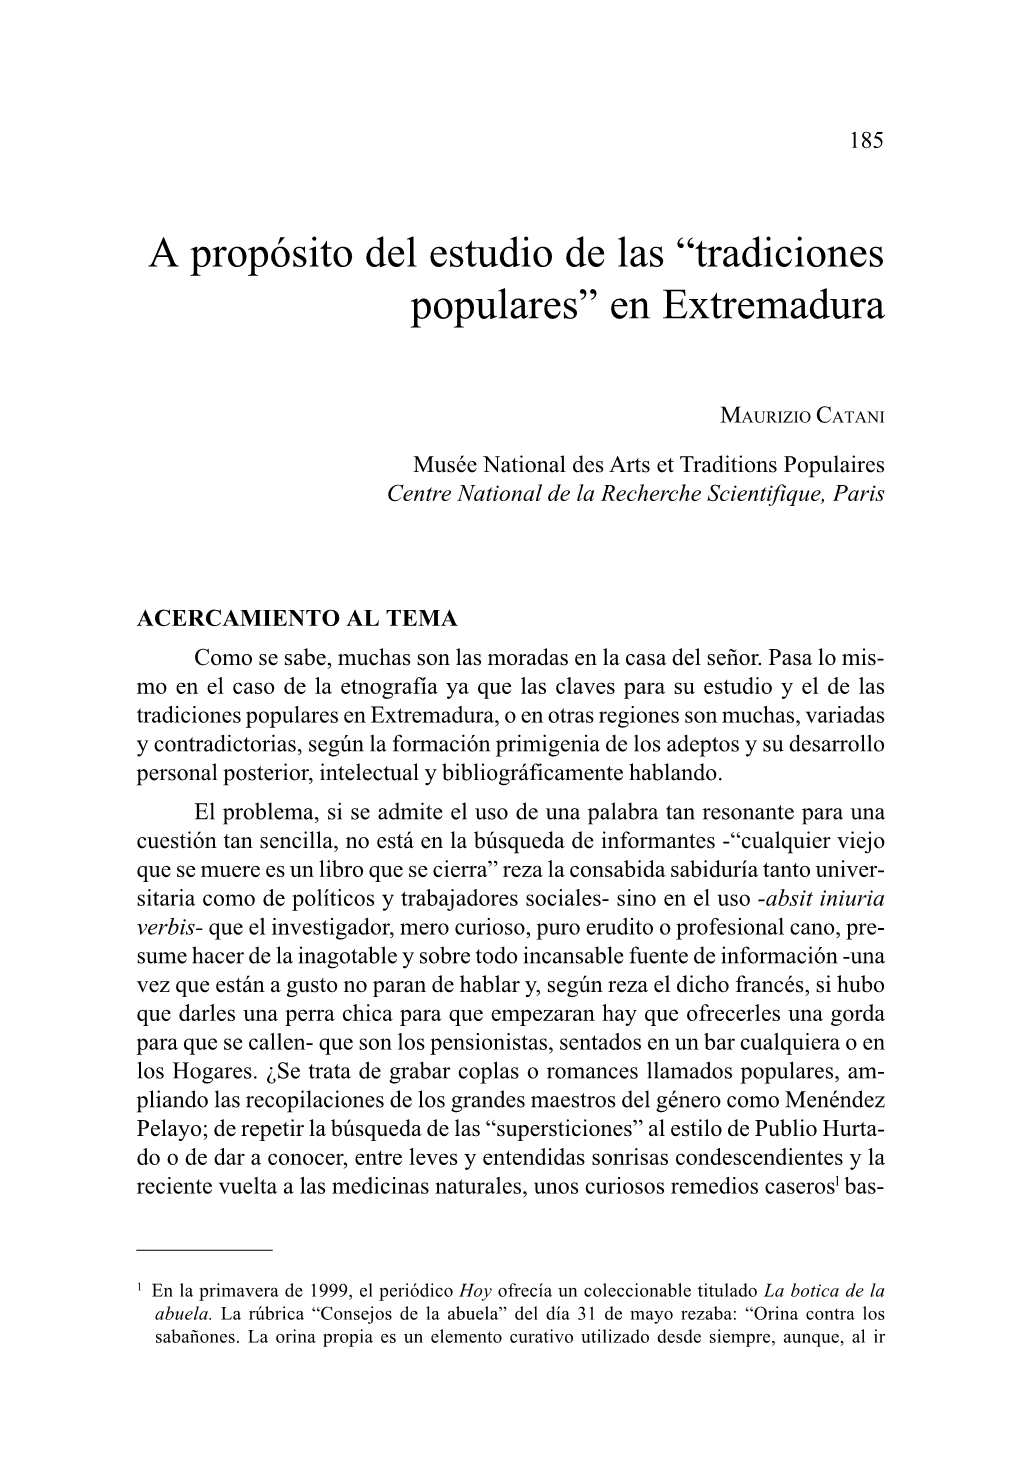 A Propósito Del Estudio De Las “Tradiciones Populares” En Extremadura